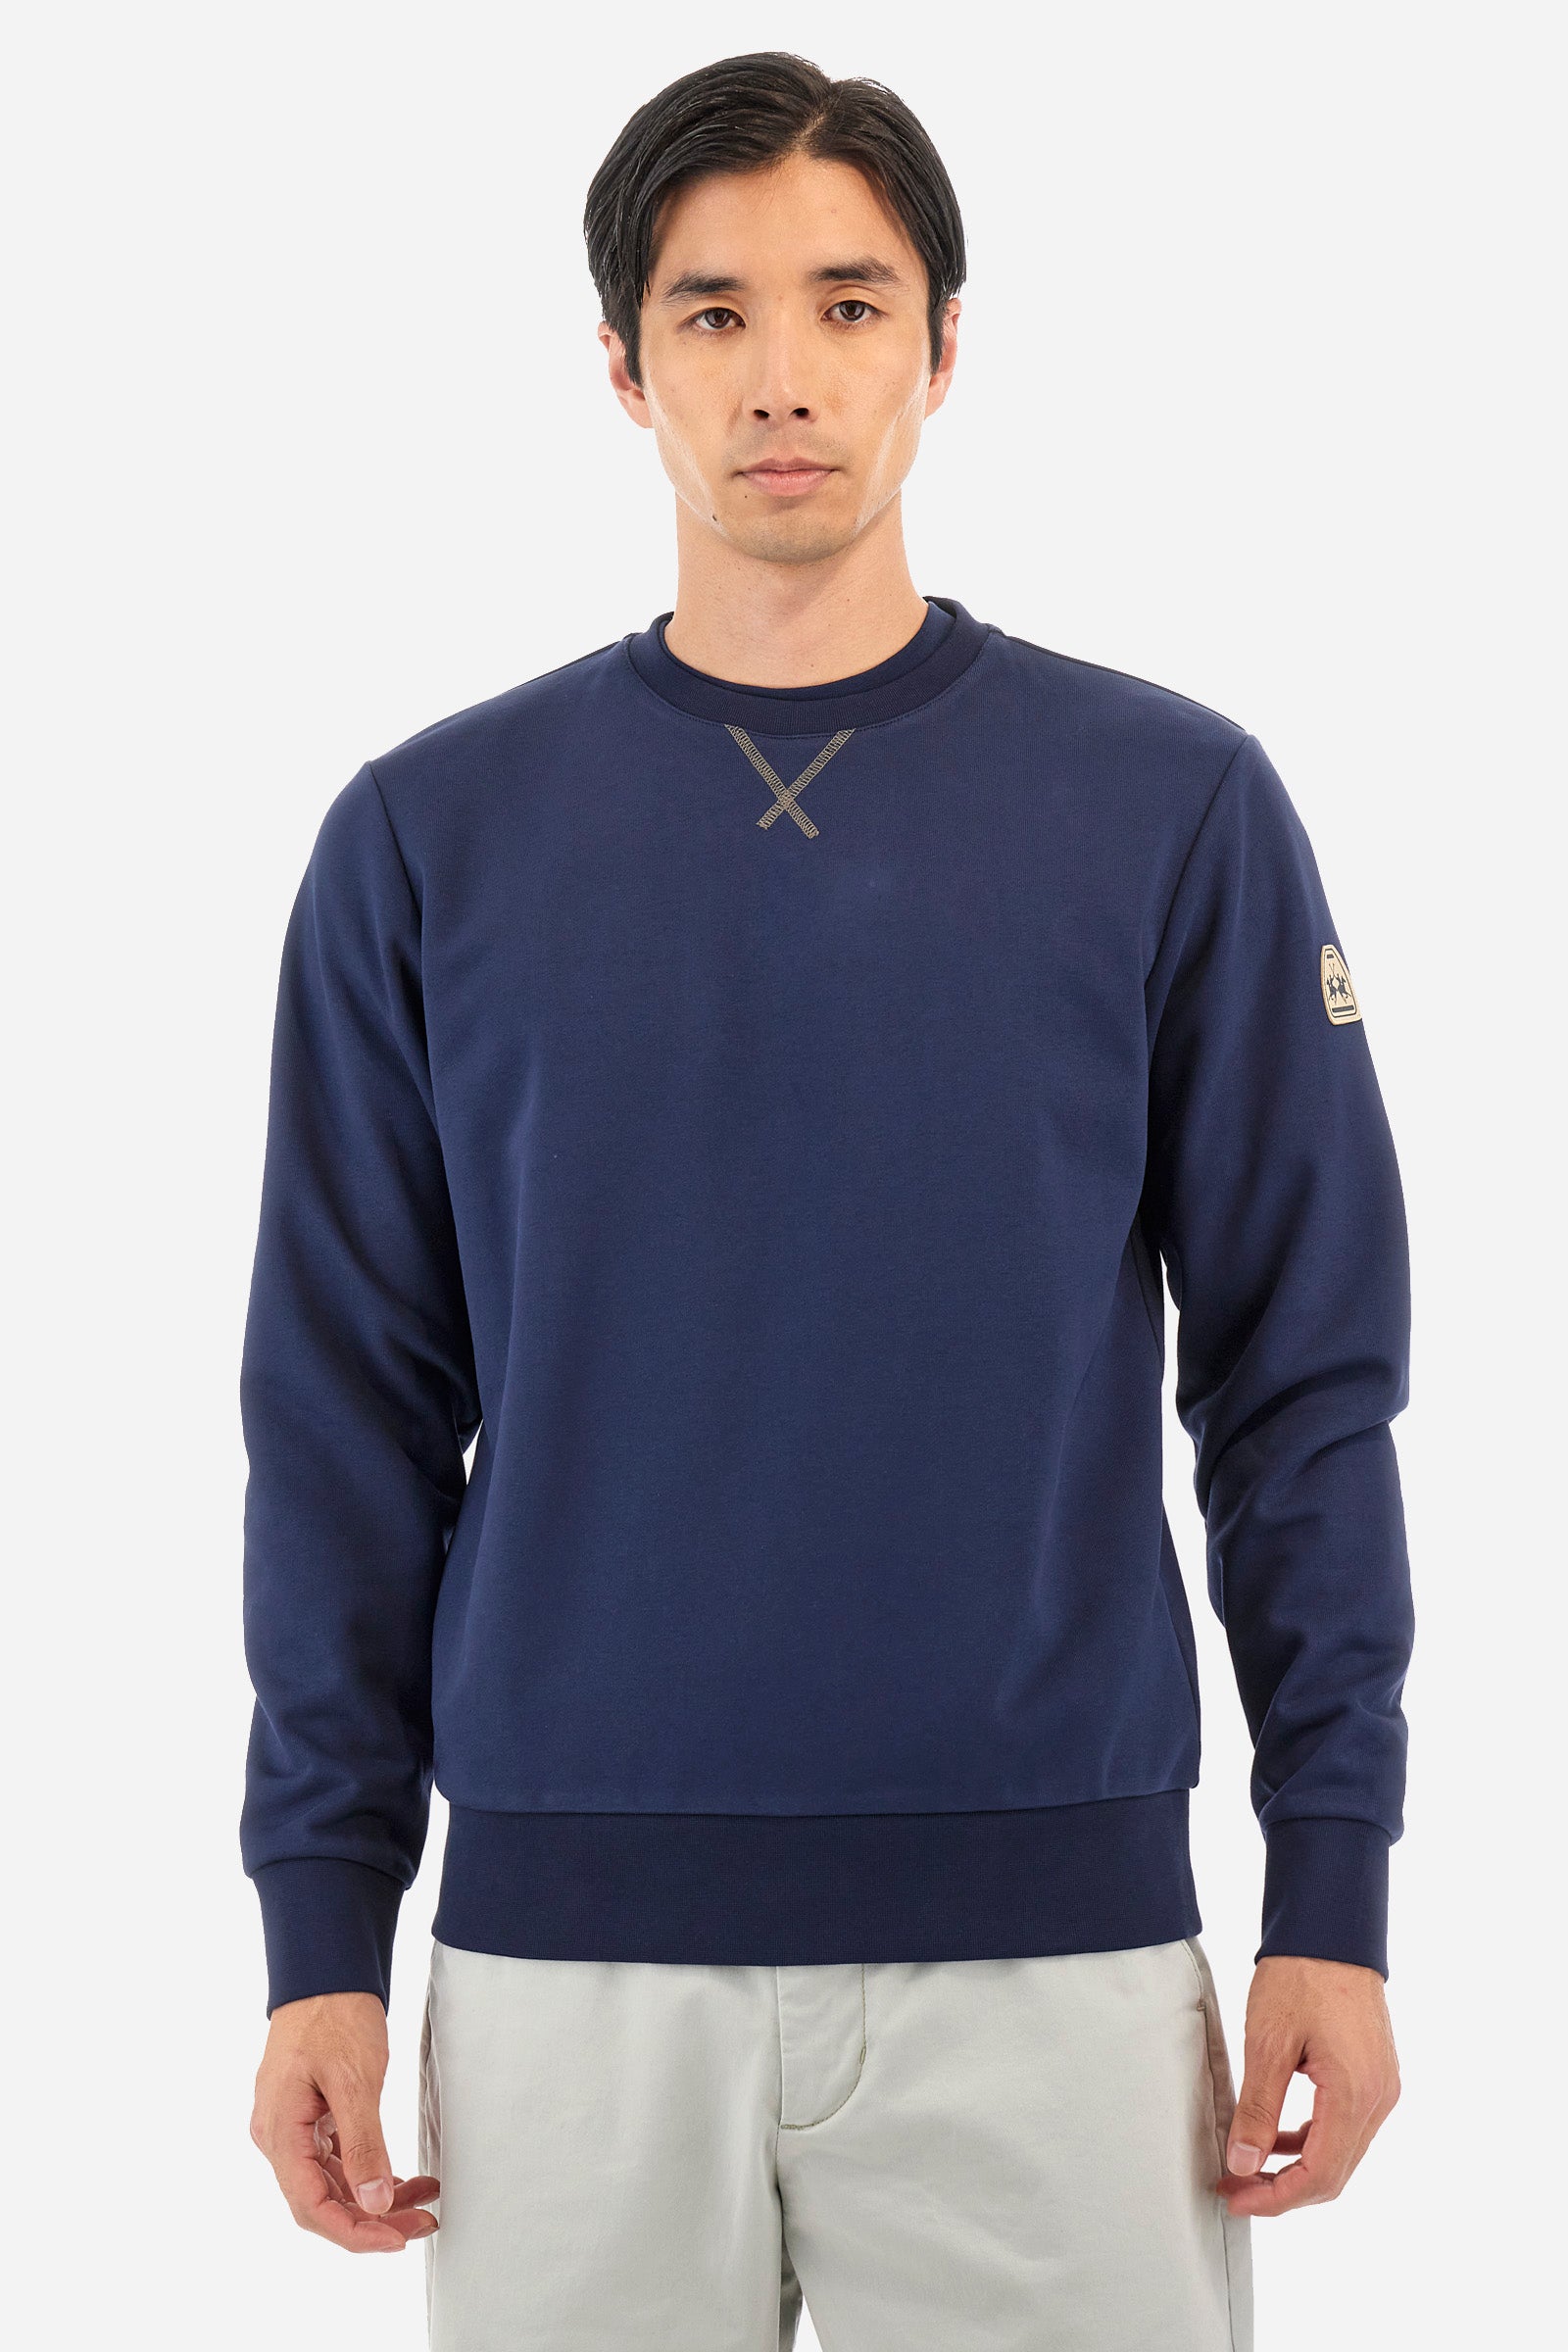 Herren-Sweatshirt Regular Fit - Yaarb